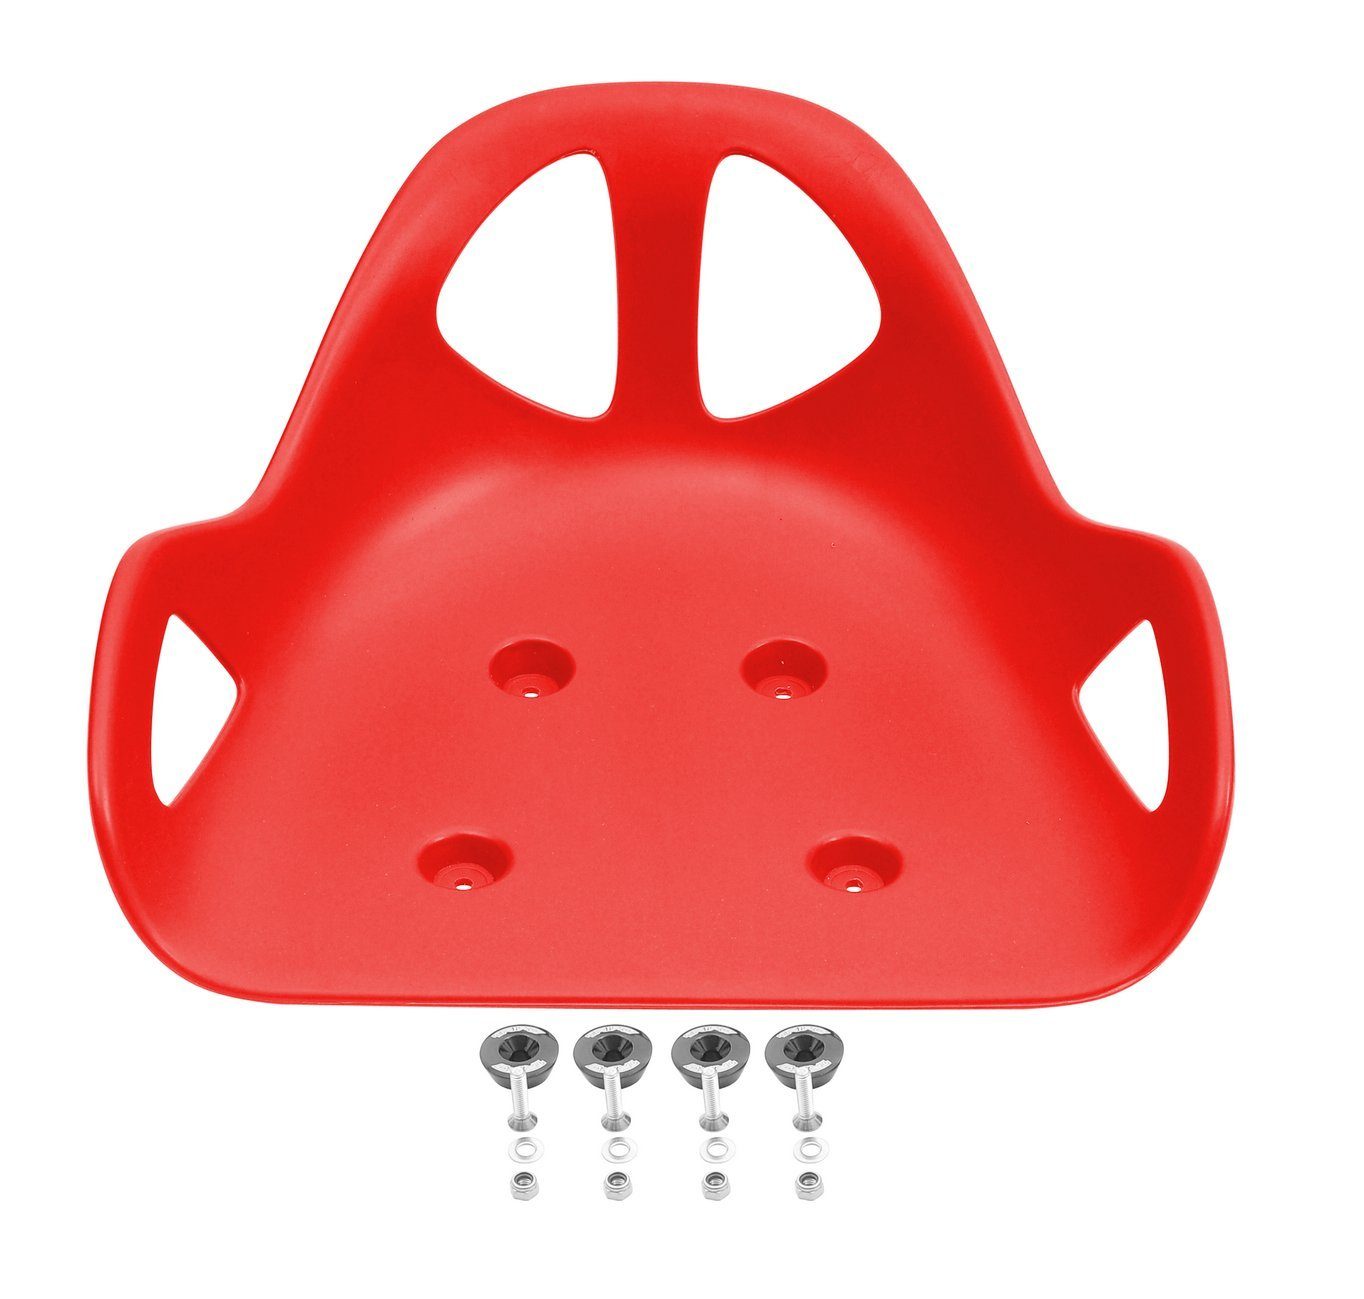 Triad Erwachsenendreirad Drift Trike Sitz inkl. Alucaps zur Befestigung, Kunststoffsitz mit 4 Befestigungscaps rot